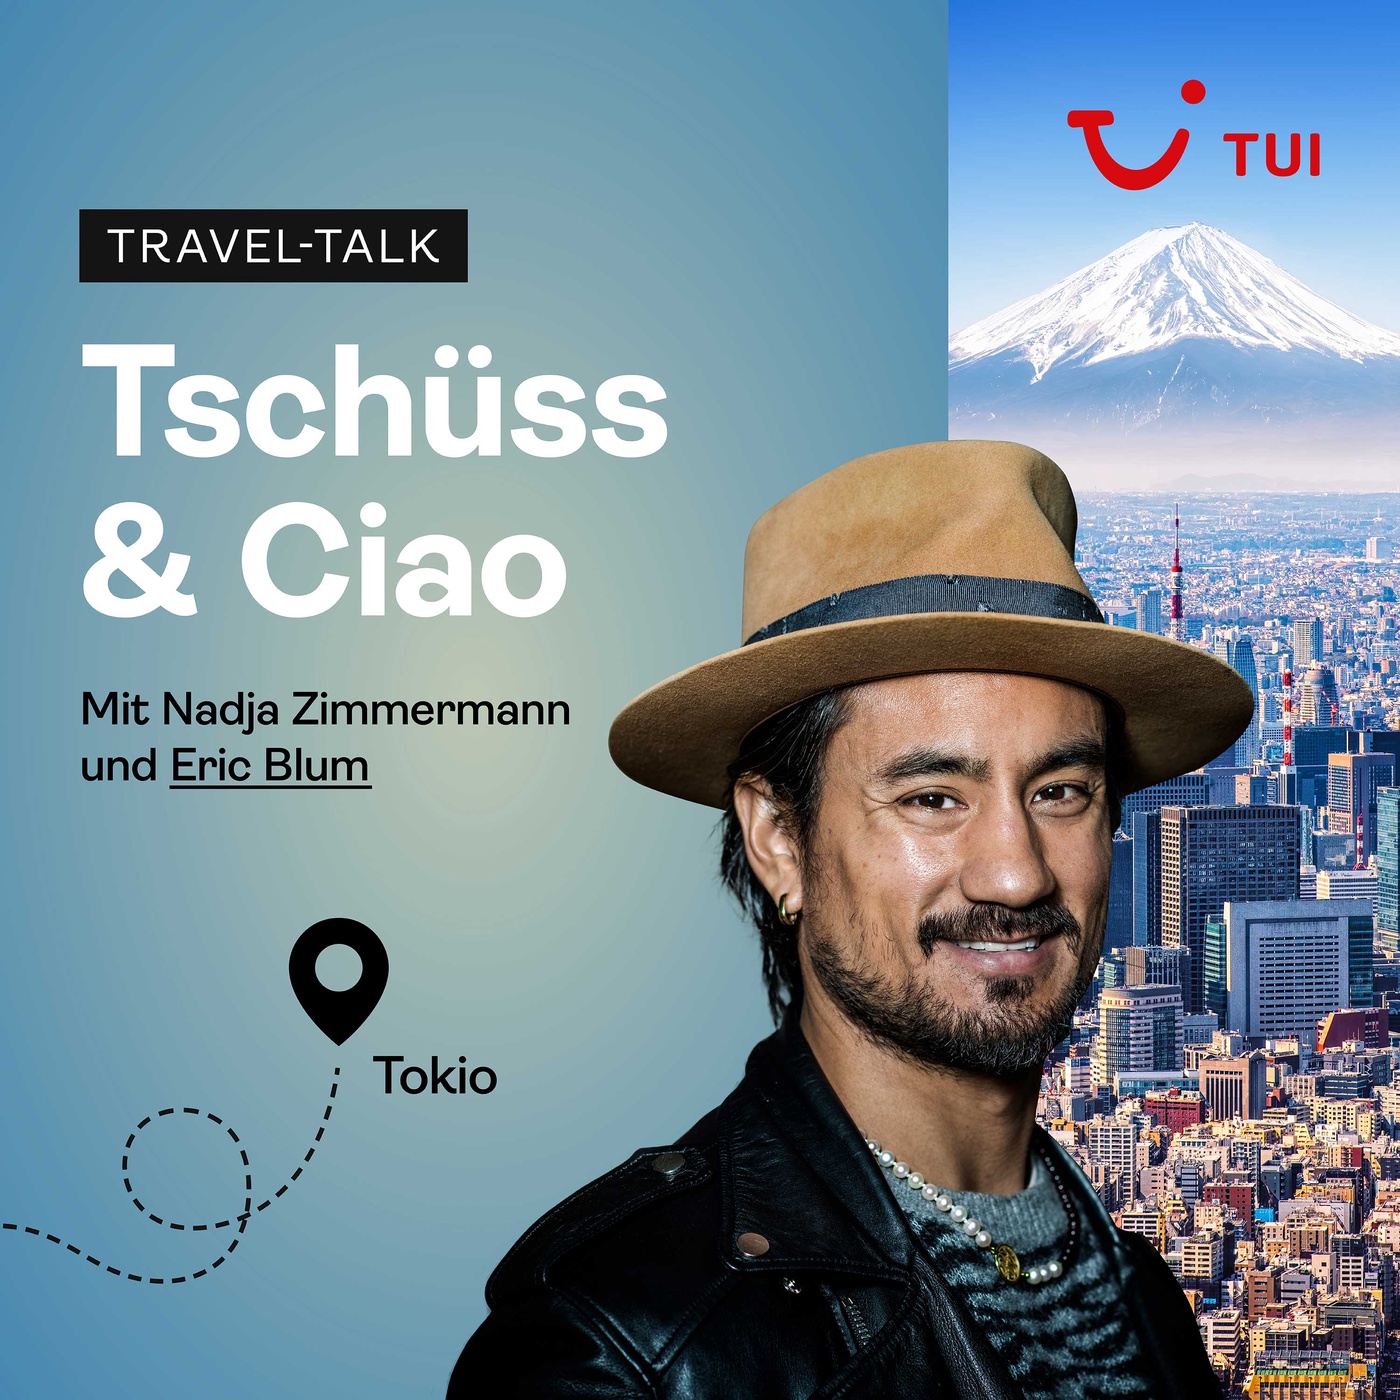 #6 Tokio's verrückte Insider-Reisetipps mit Eric Blum